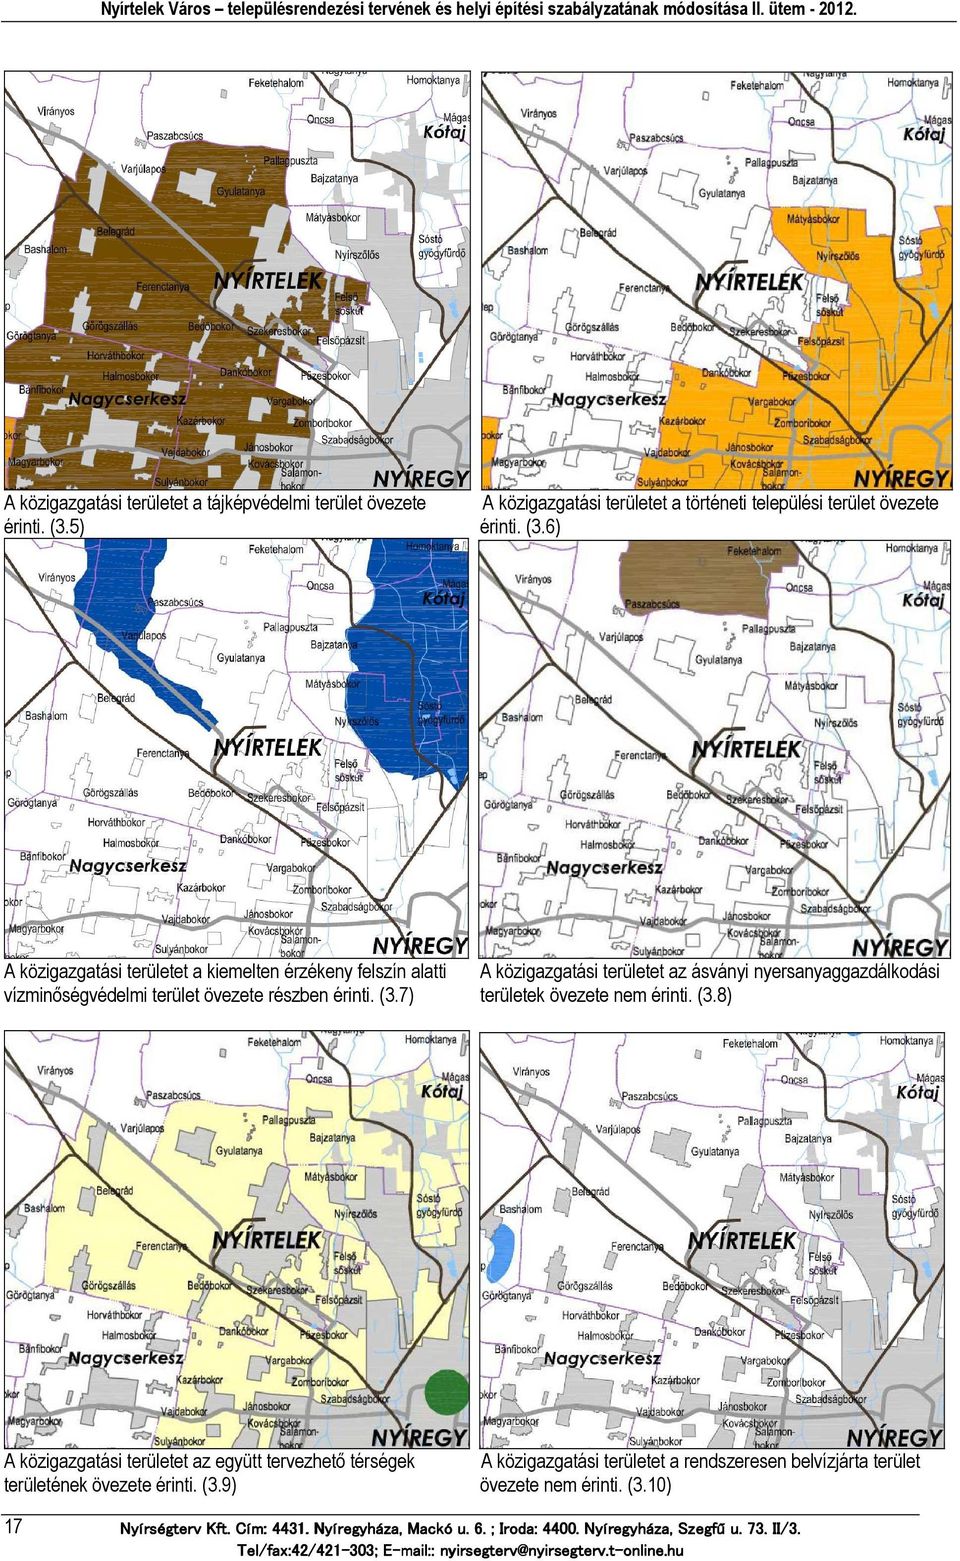 6) A közigazgatási területet a kiemelten érzékeny felszín alatti A közigazgatási területet az ásványi nyersanyaggazdálkodási